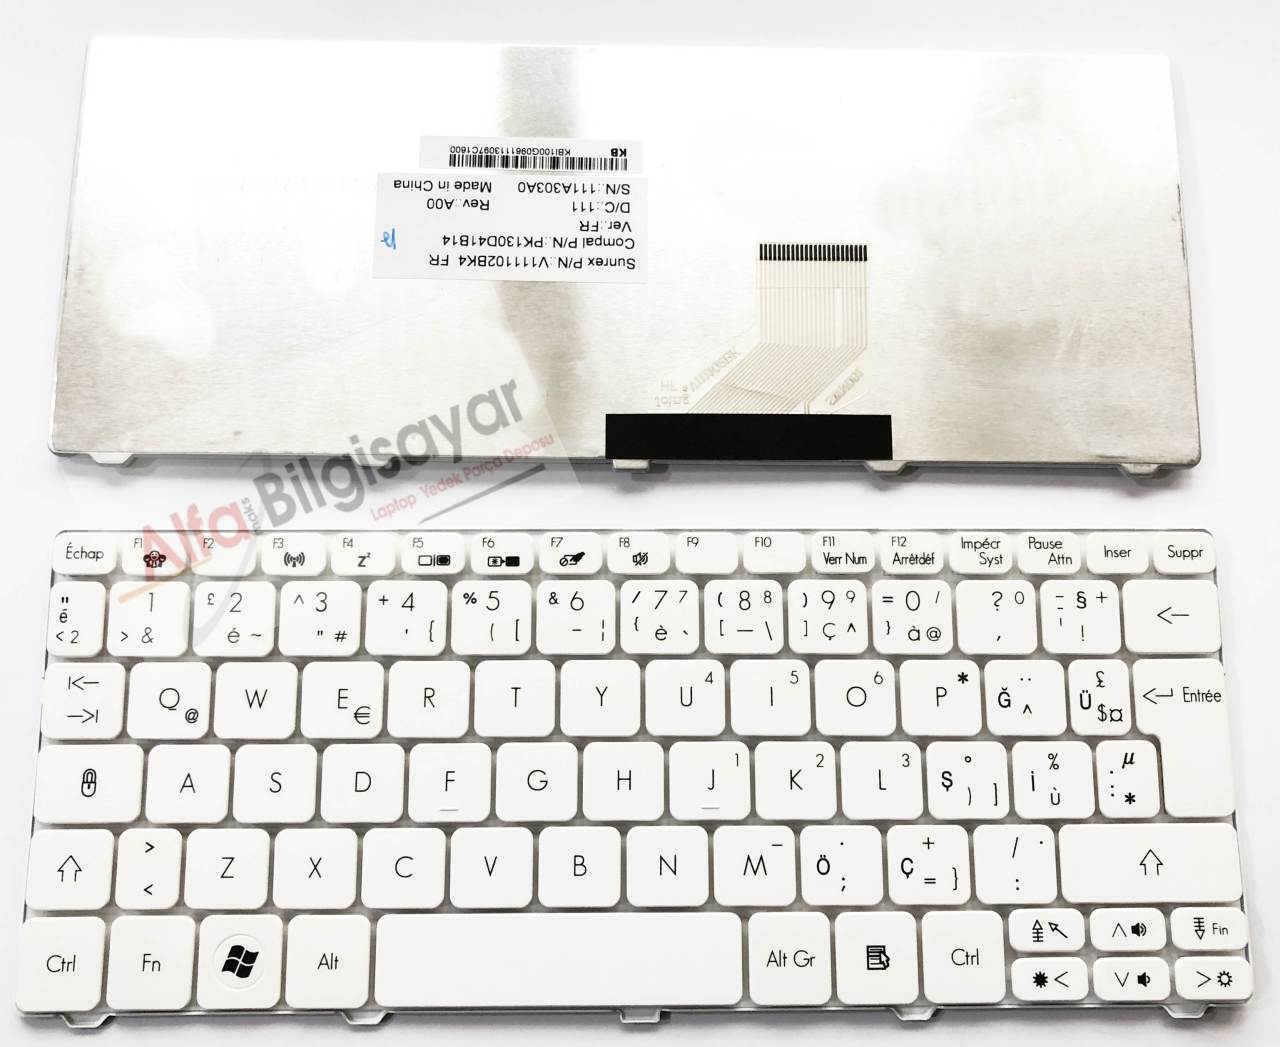 Acer Beyaz D255 D255e D257 D260 Pav50 kav50 nav50 Pav70 kav70 nav70 Pav01 D270 One 521 One 522 D270 Kav70 PAV01 P0VE6 POVE6 ze6 ze7 zh9 Klavye  Keyboard Tuş Takımı